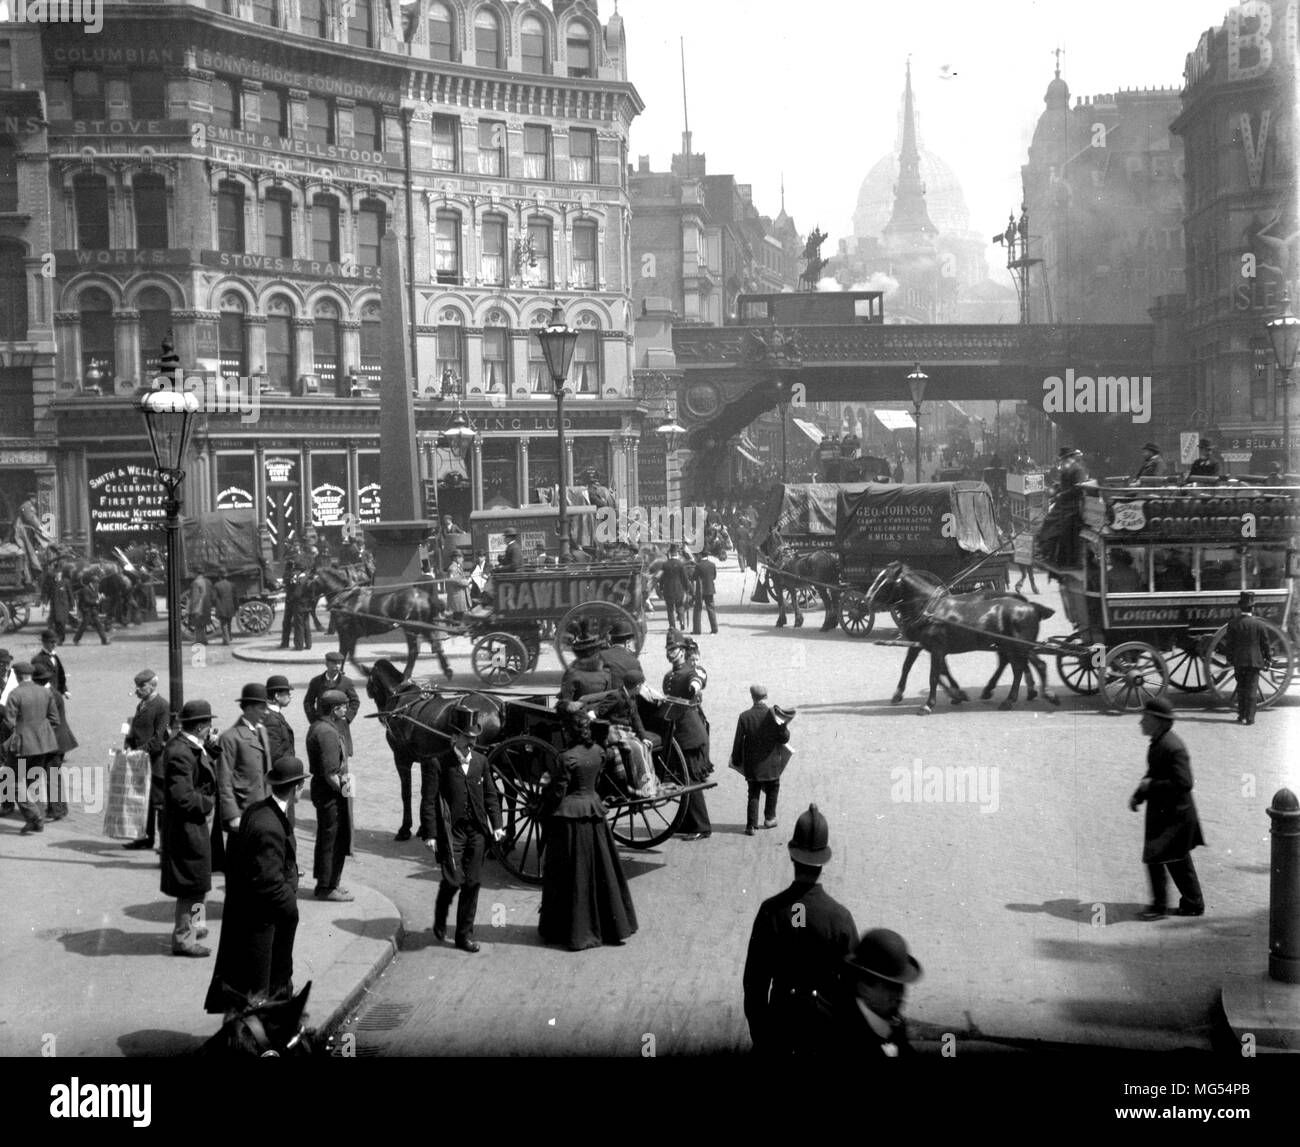 Vieux Londres victorien historique : les gens qui vaquent à leurs affaires dans les rues de Londres du 19ème siècle à Ludgate Circus, en 1896 Banque D'Images